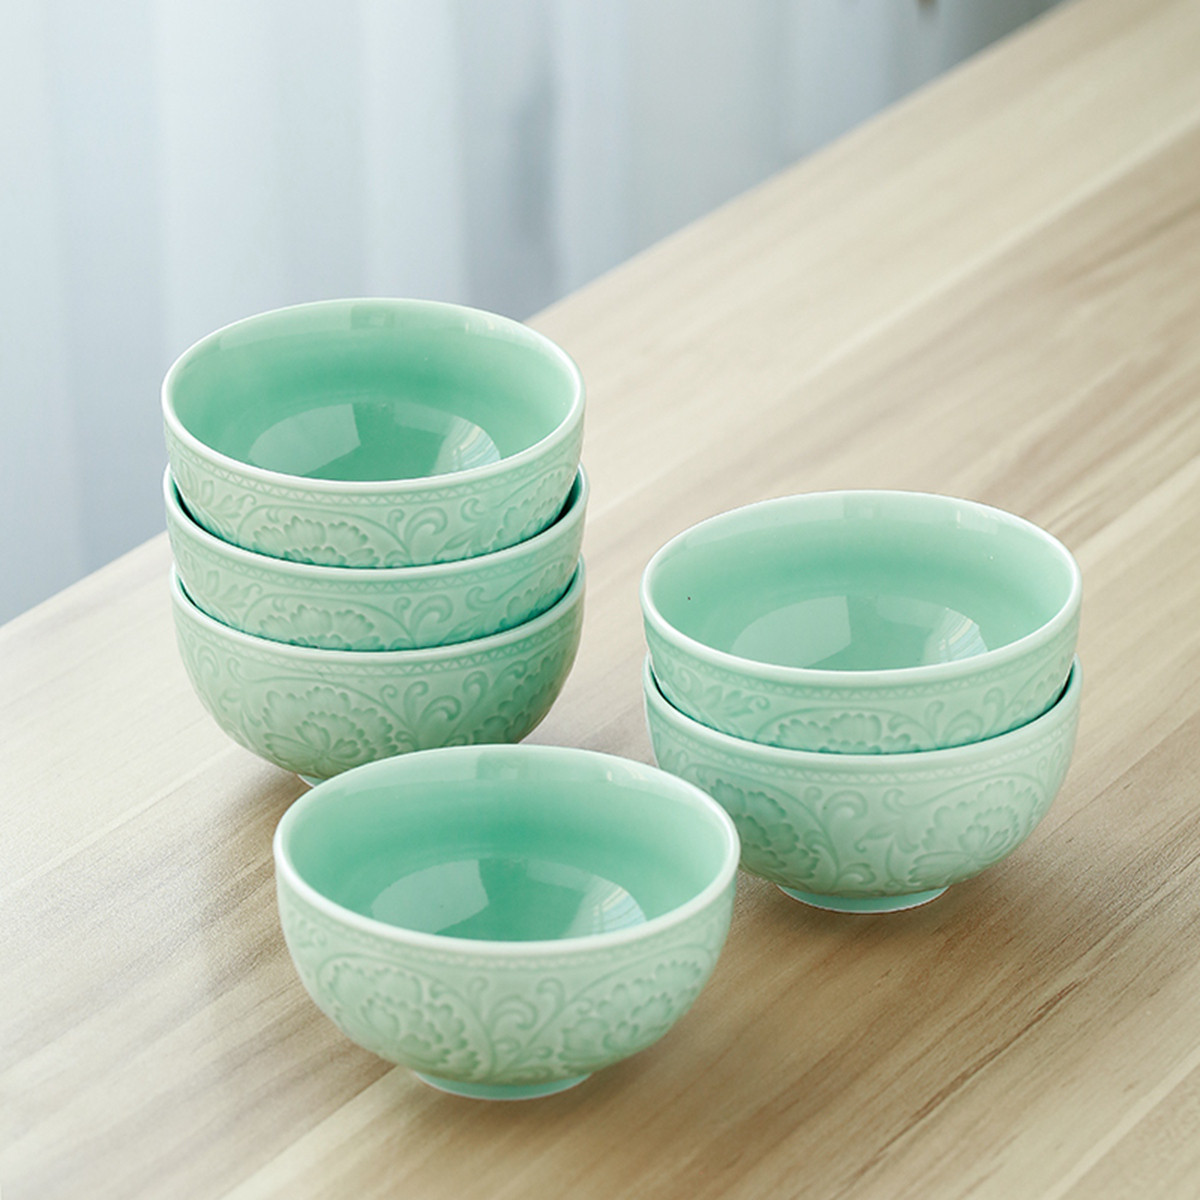 苏氏陶瓷 青瓷釉陶瓷碗花开富贵米饭碗汤碗6件套装餐具